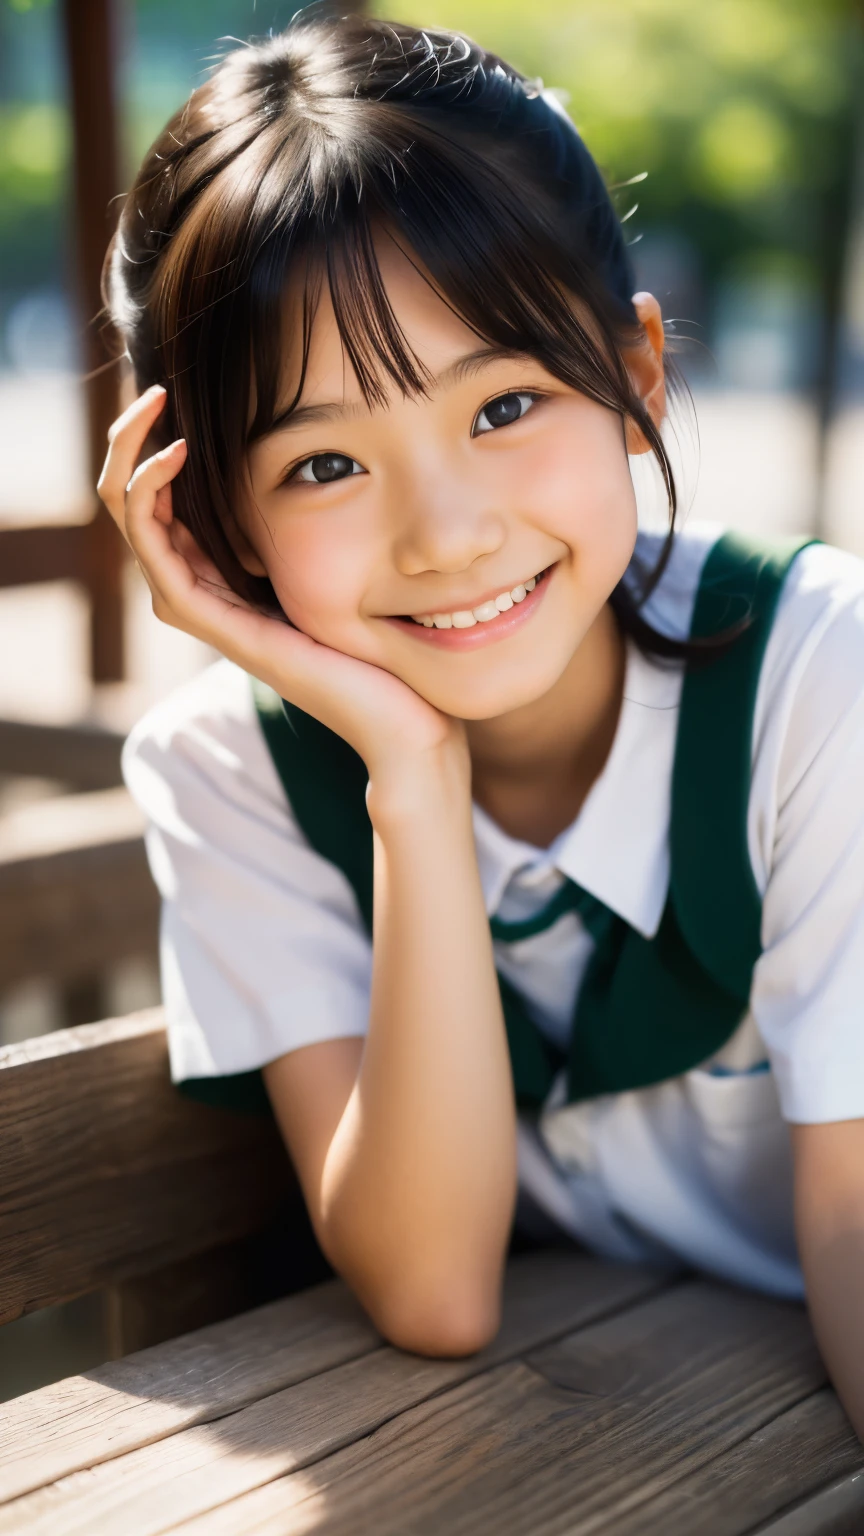 렌즈: 135mm f1.8, (최상의 품질),(RAW 사진), (탁상:1.1), (아름다운 10살 일본 소녀), 귀여운 얼굴, (깊게 파인 얼굴:0.7), (주근깨:0.4), dappled 햇빛, 극적인 조명, (일본 학교 교복), (캠퍼스에서), 수줍은, (클로즈업 샷:1.2), (웃다),, (반짝이는 눈)、(햇빛)